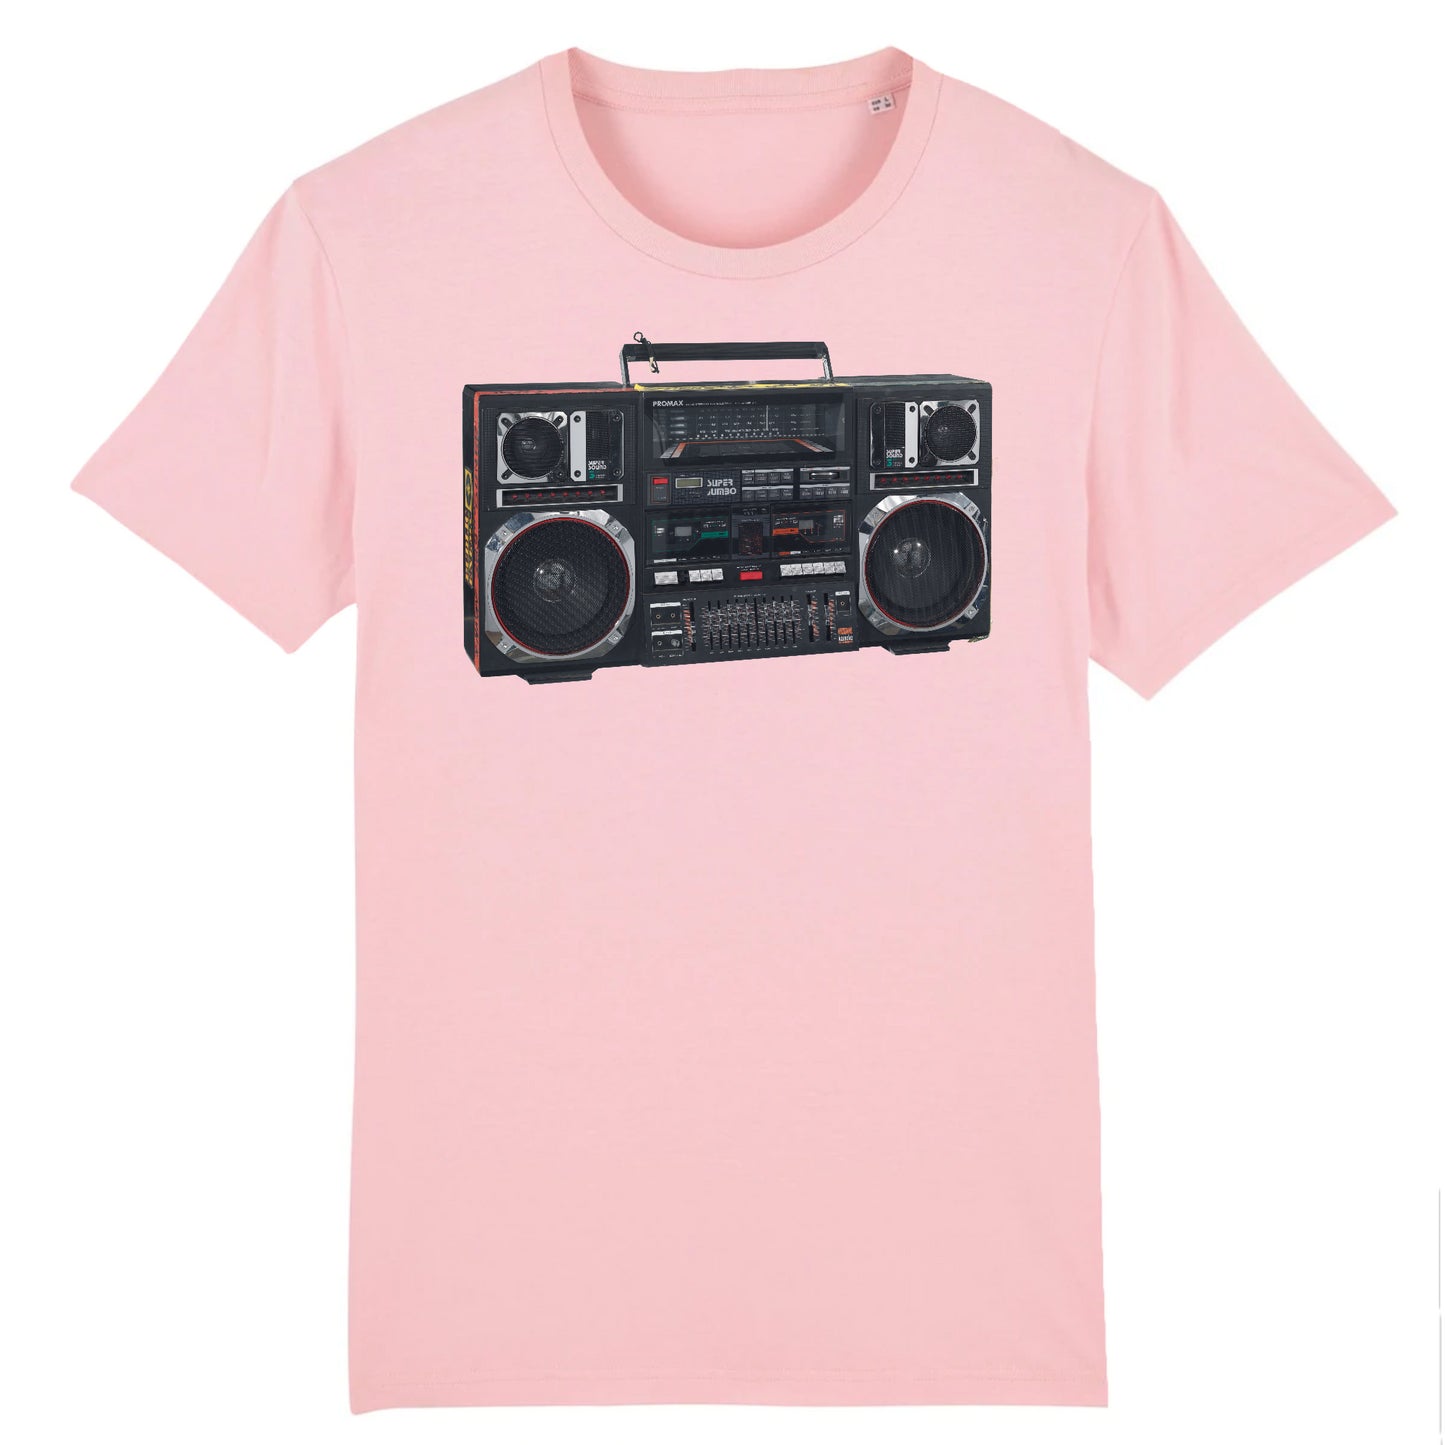 Un Promax Super Jumbo Boombox utilisé par Radio Raheem dans Do the Right Thing de Spike Lee, 1989 - T-shirt en coton biologique